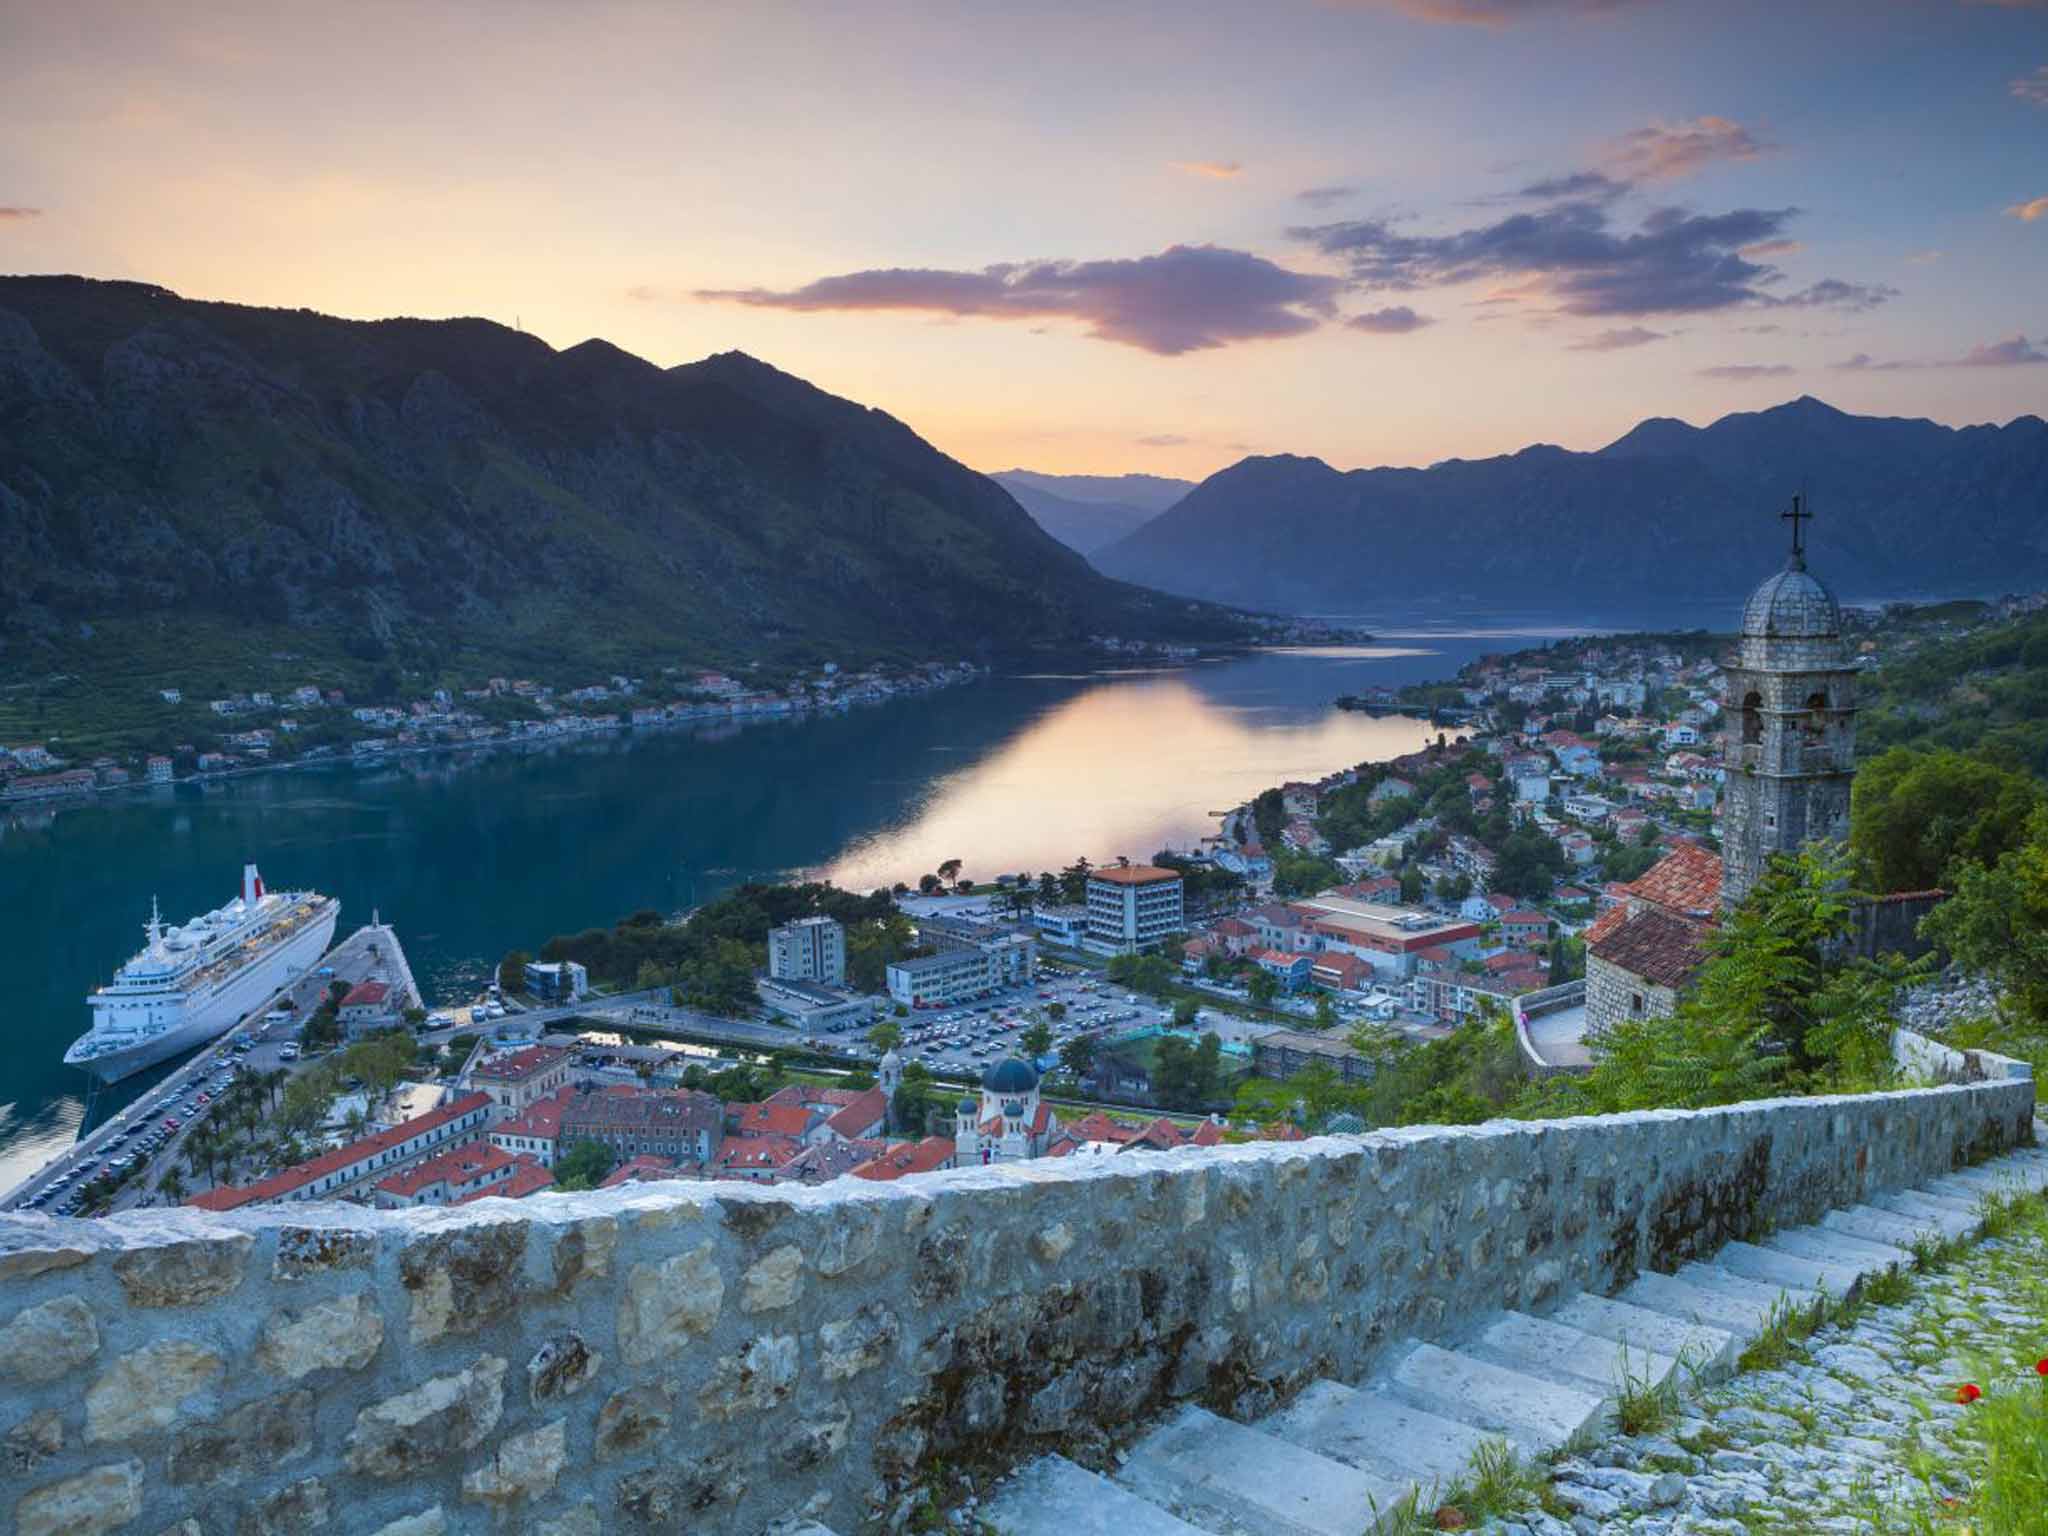 Take a view: Montenegro